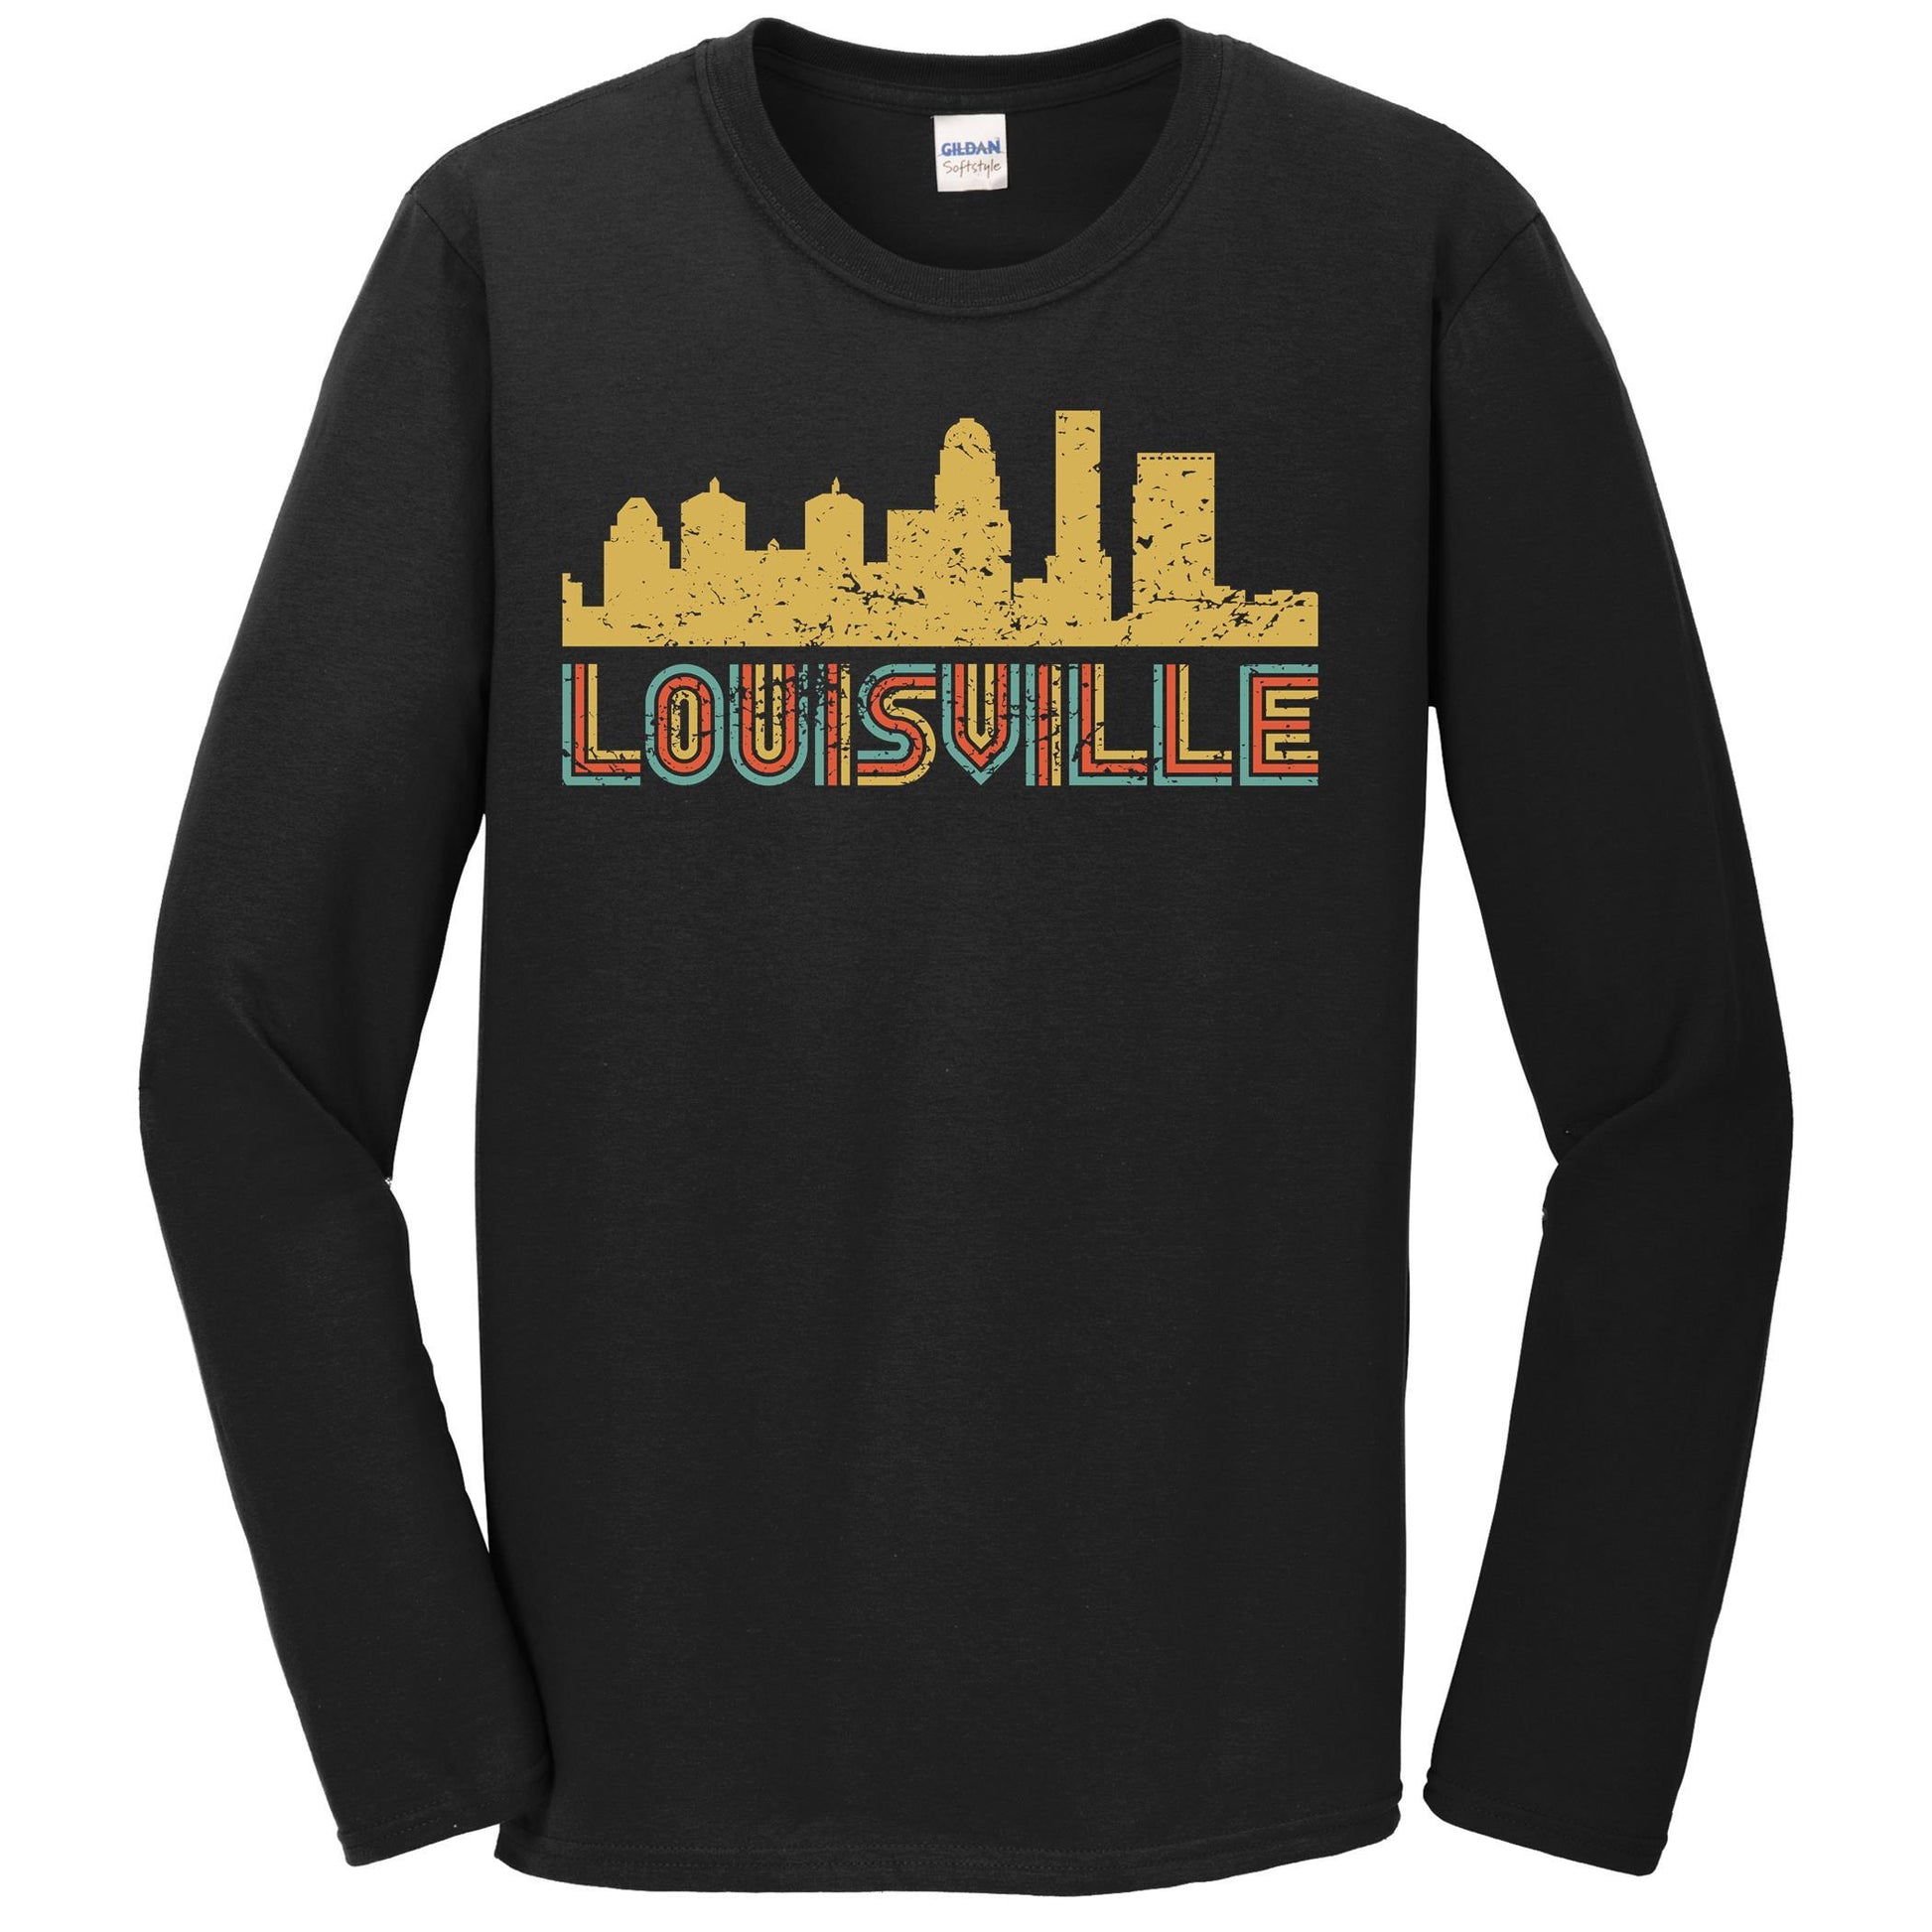 Kentucky Cities Louisville T-Shirt